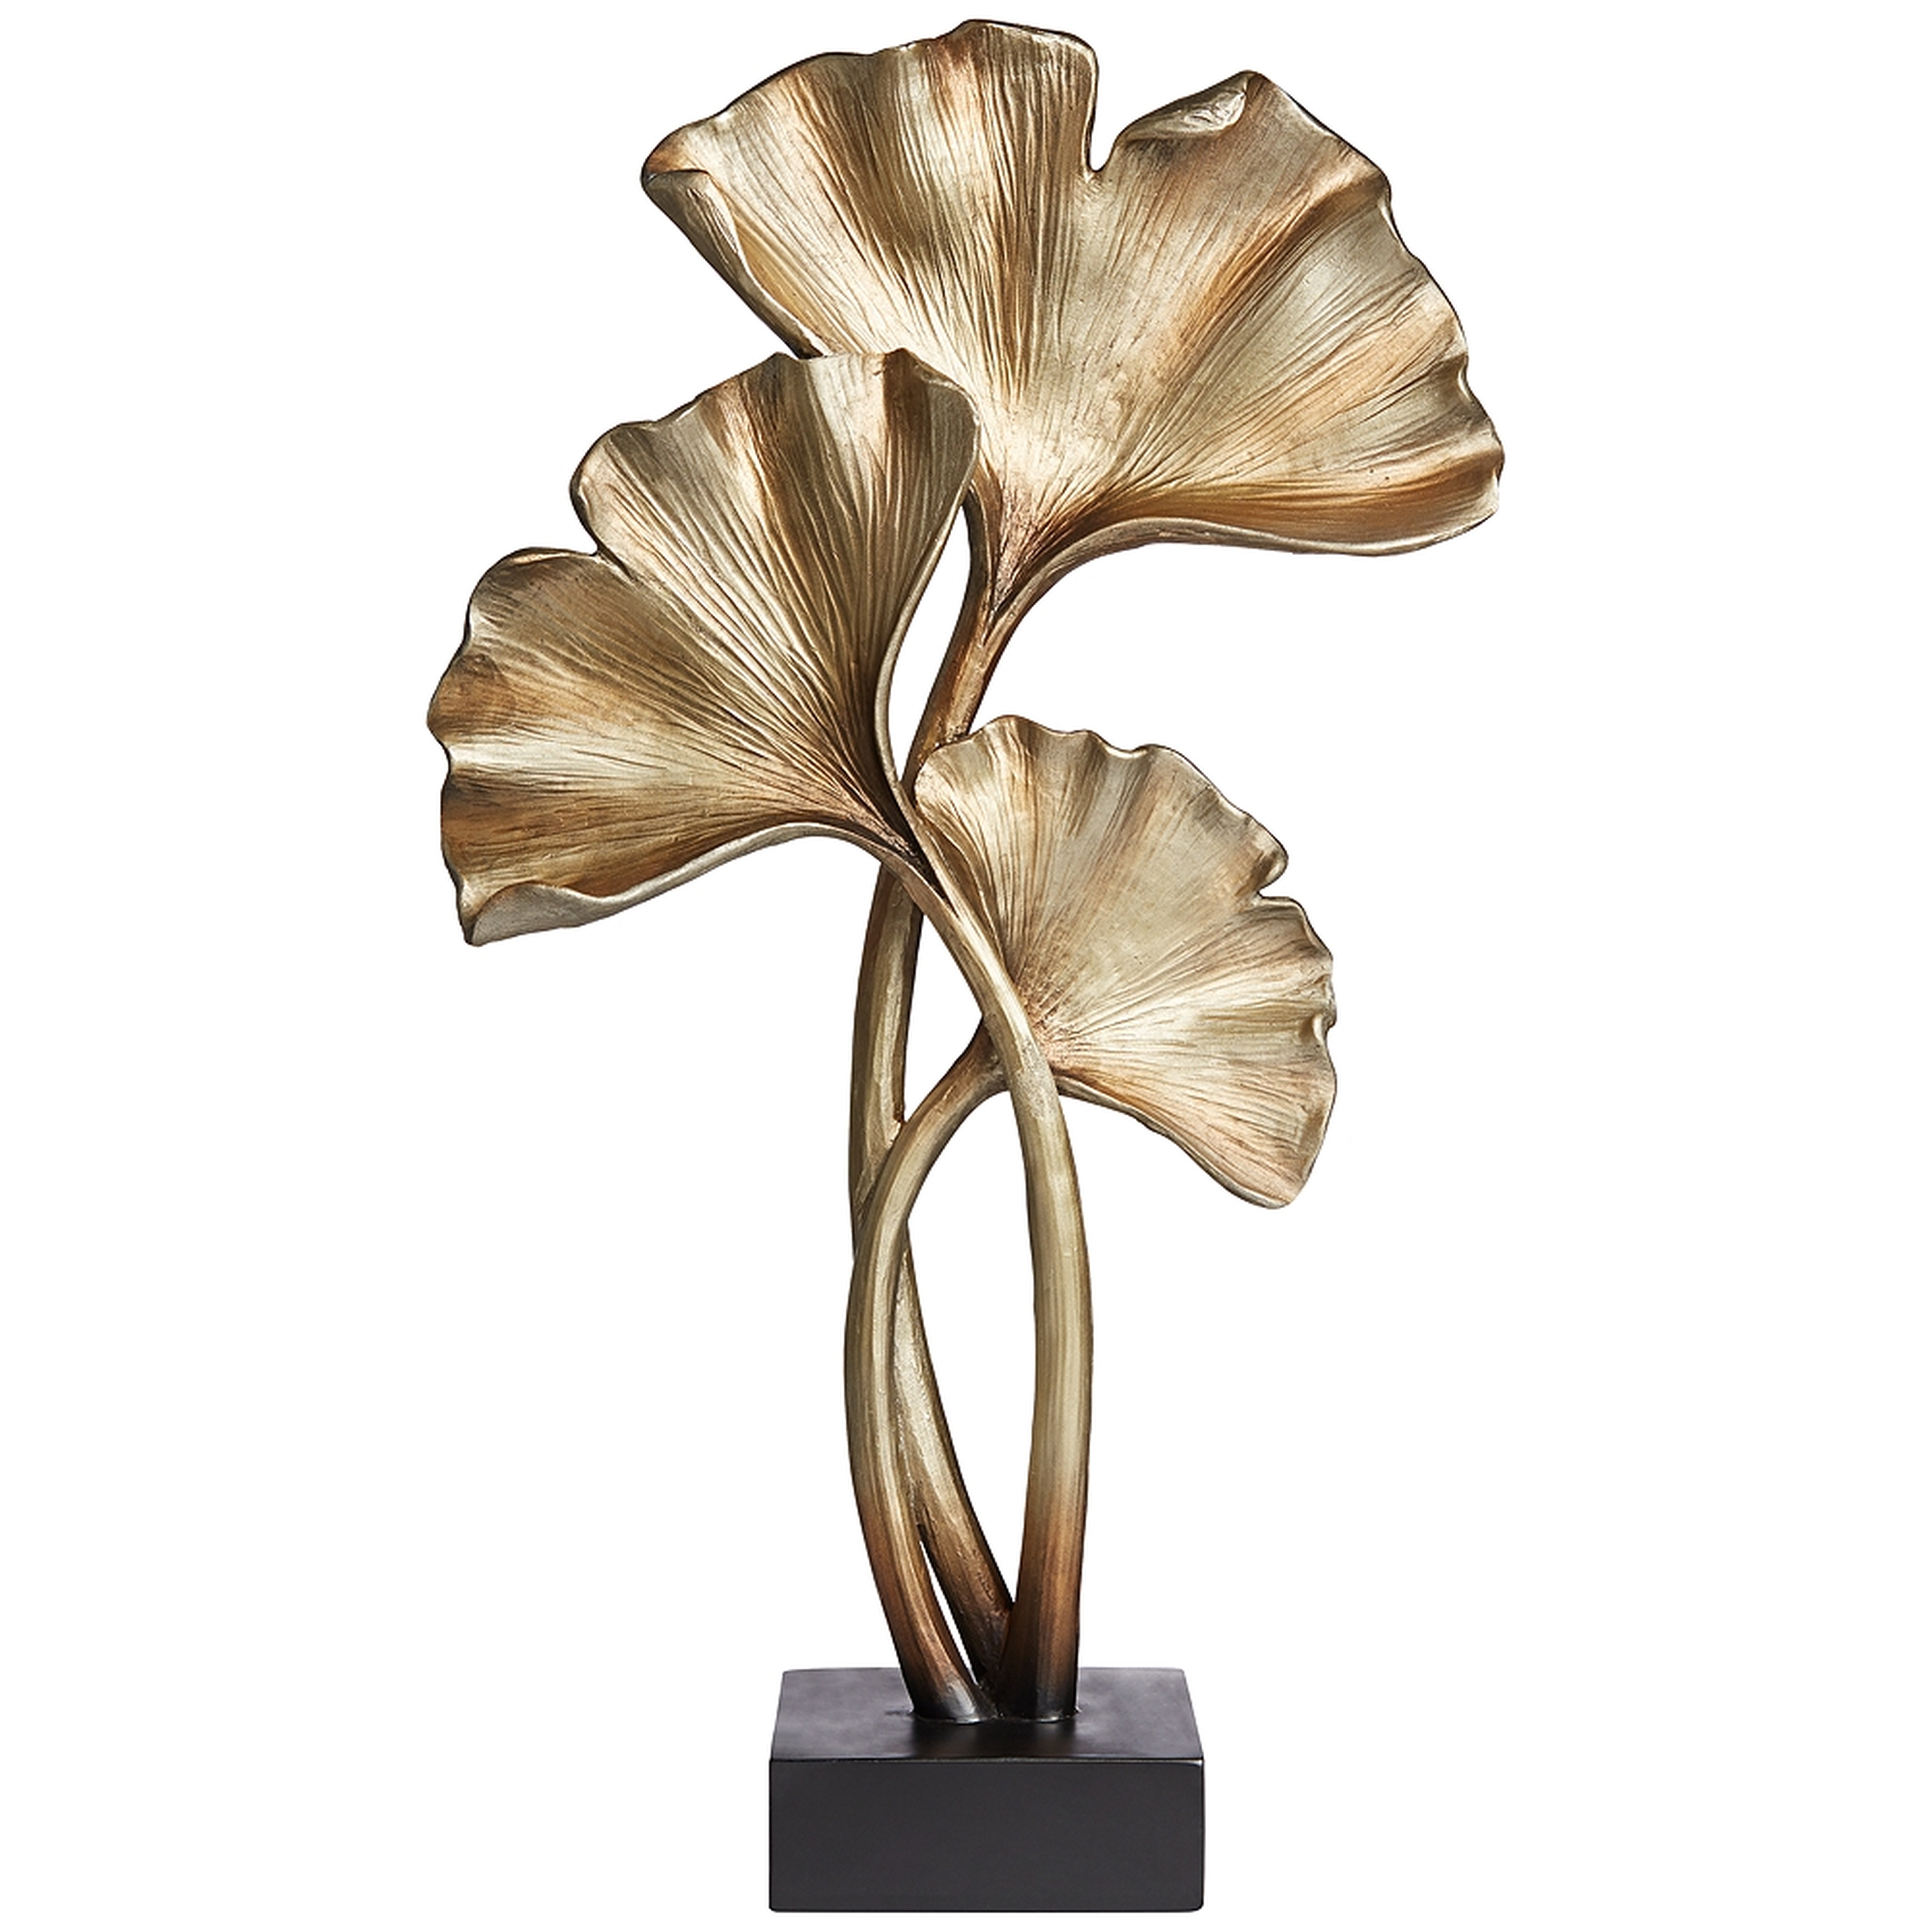 Matte Copper 21" High Ginkgo Leaves Sculpture - Style # 73D74 - Lamps Plus